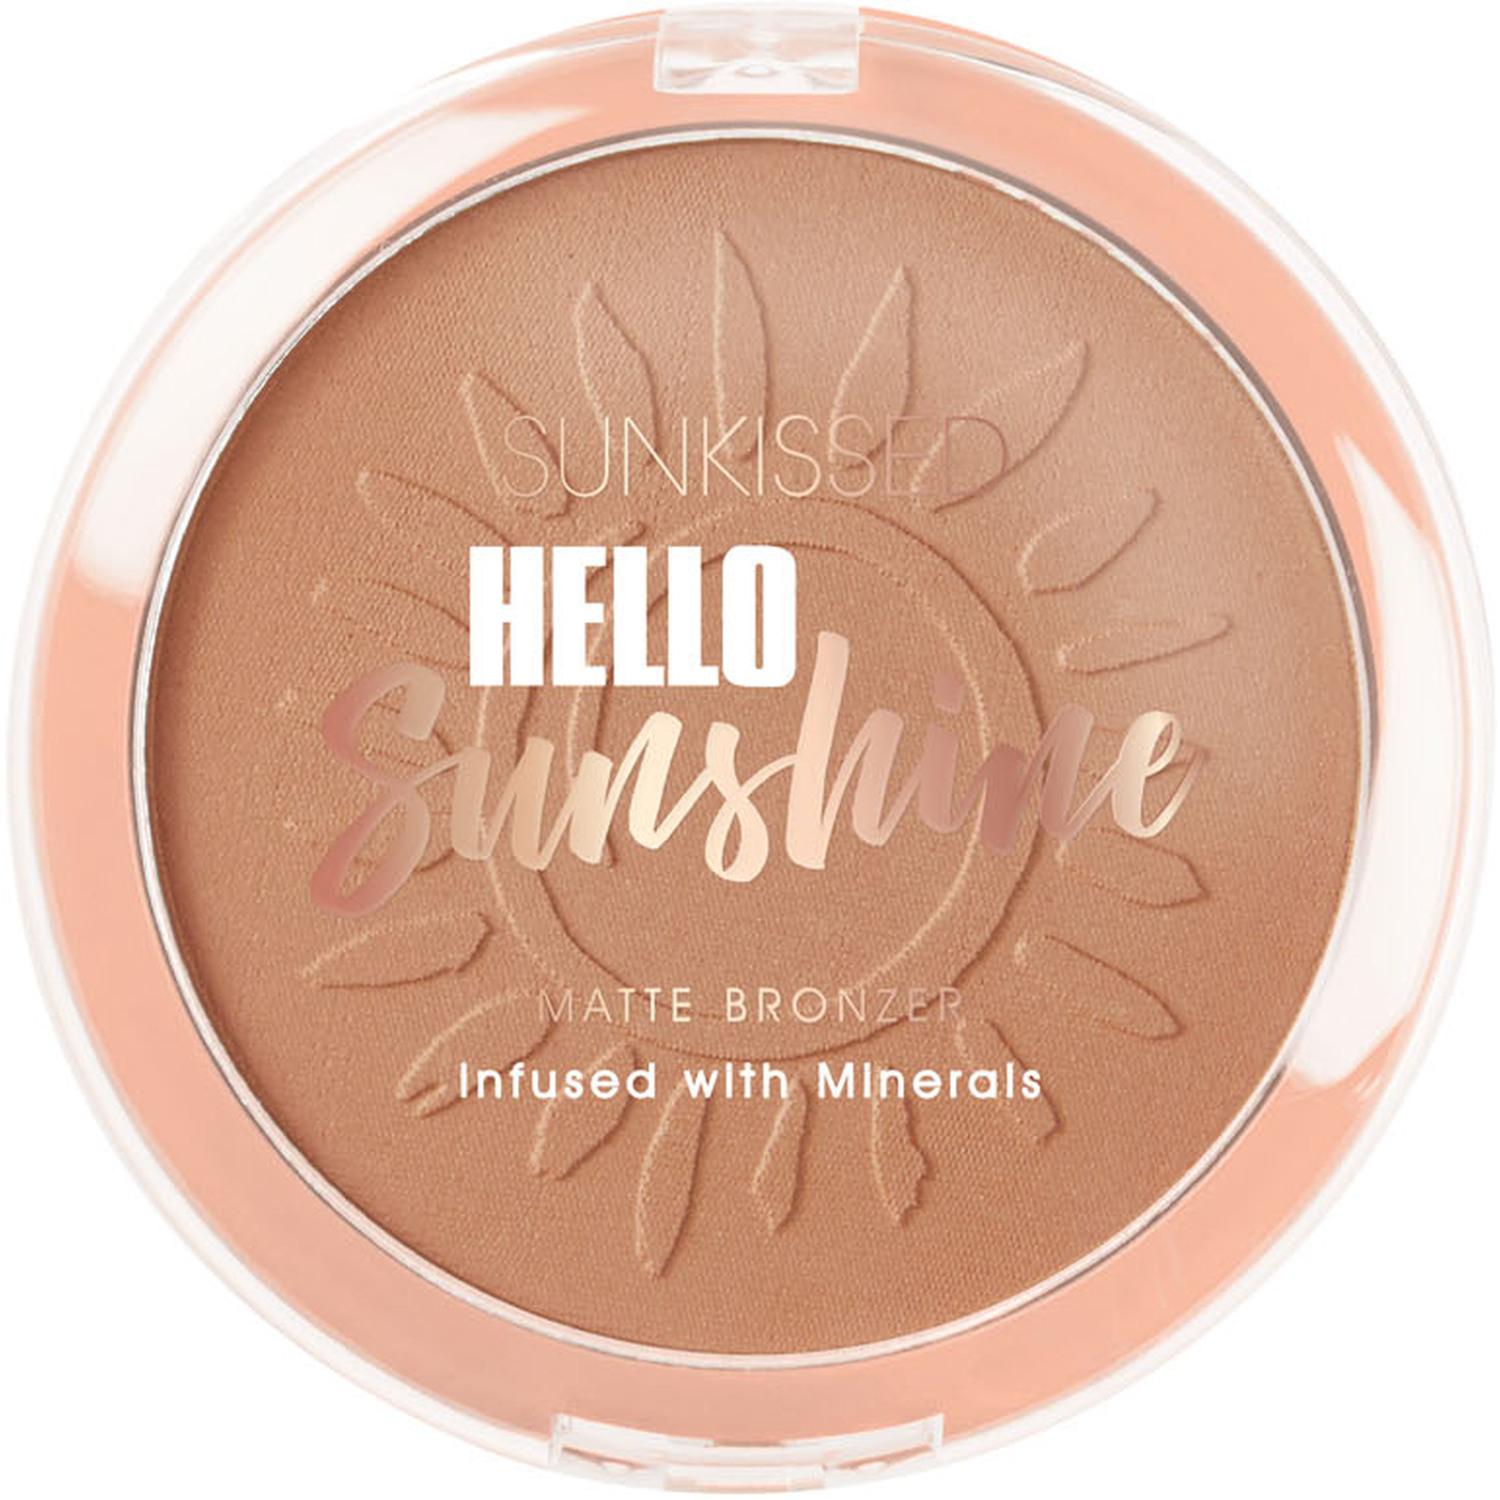 Sunkissed Hello Sunshine Matte Bronzer Palette Image